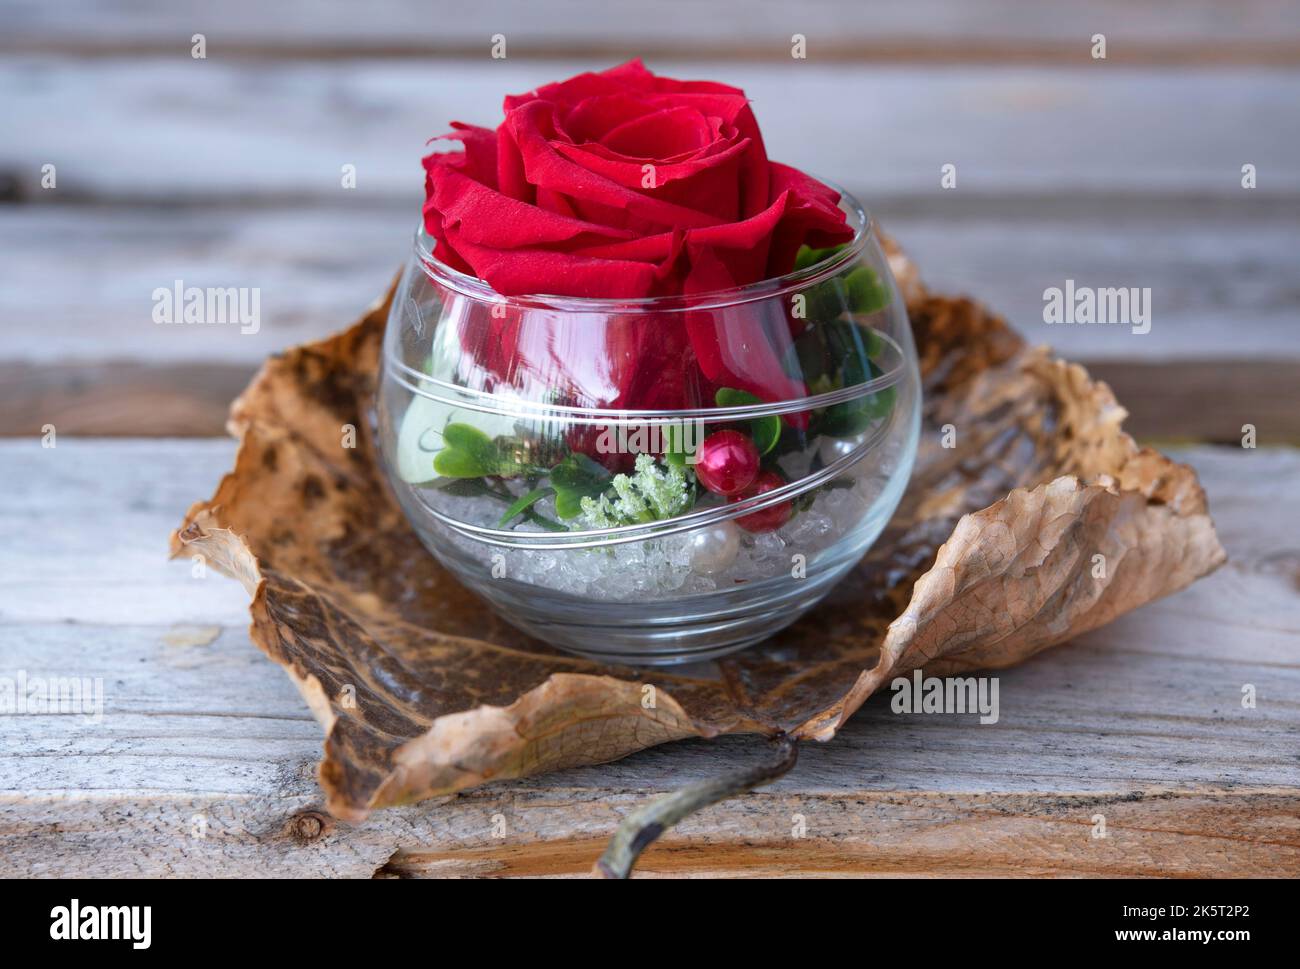 Rose rouge unique dans un bol en verre sur la feuille, isolée sur le fond en bois Banque D'Images